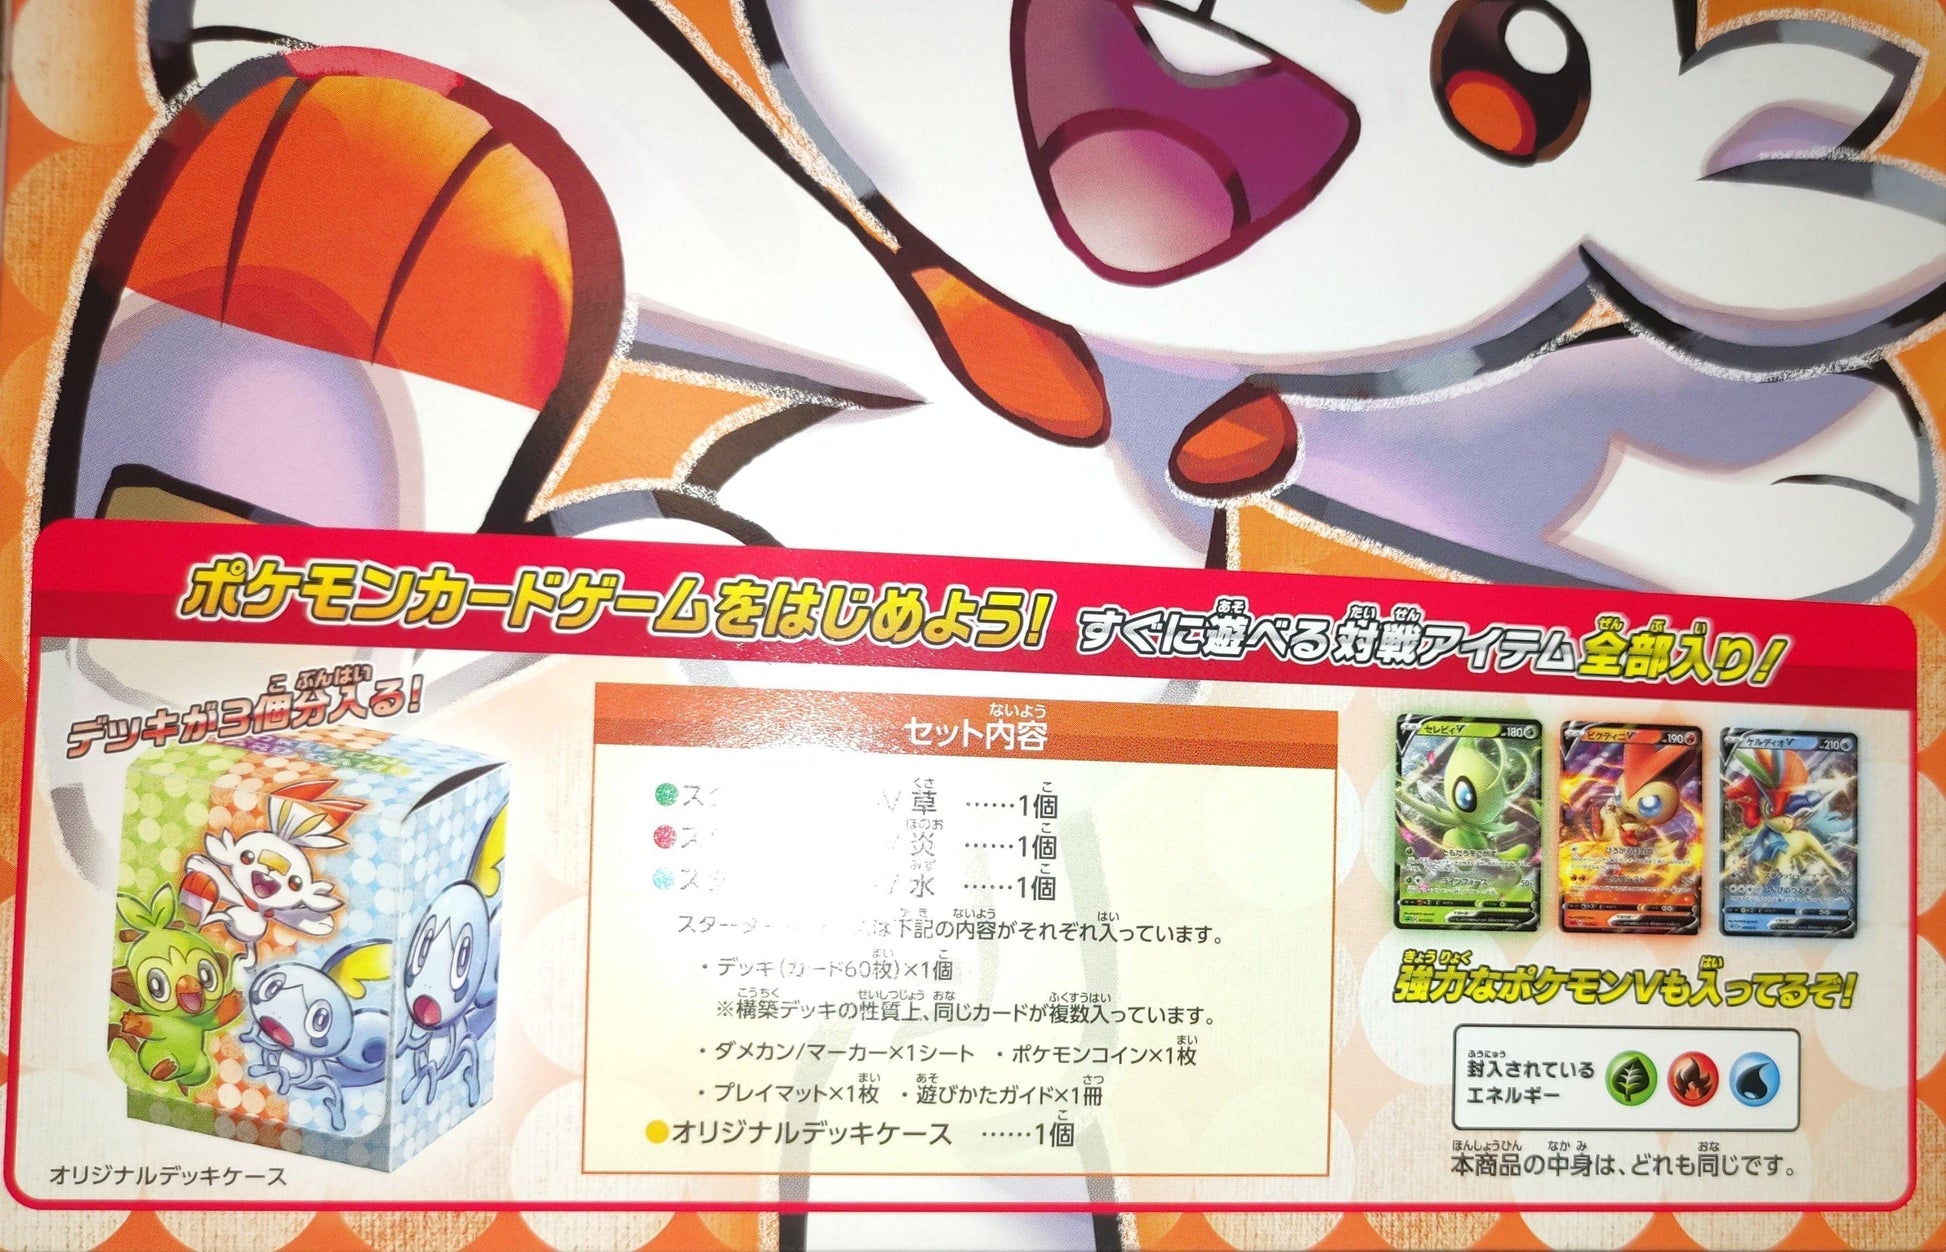 Pokémon Toy's R us Triple V set ChitoroShop